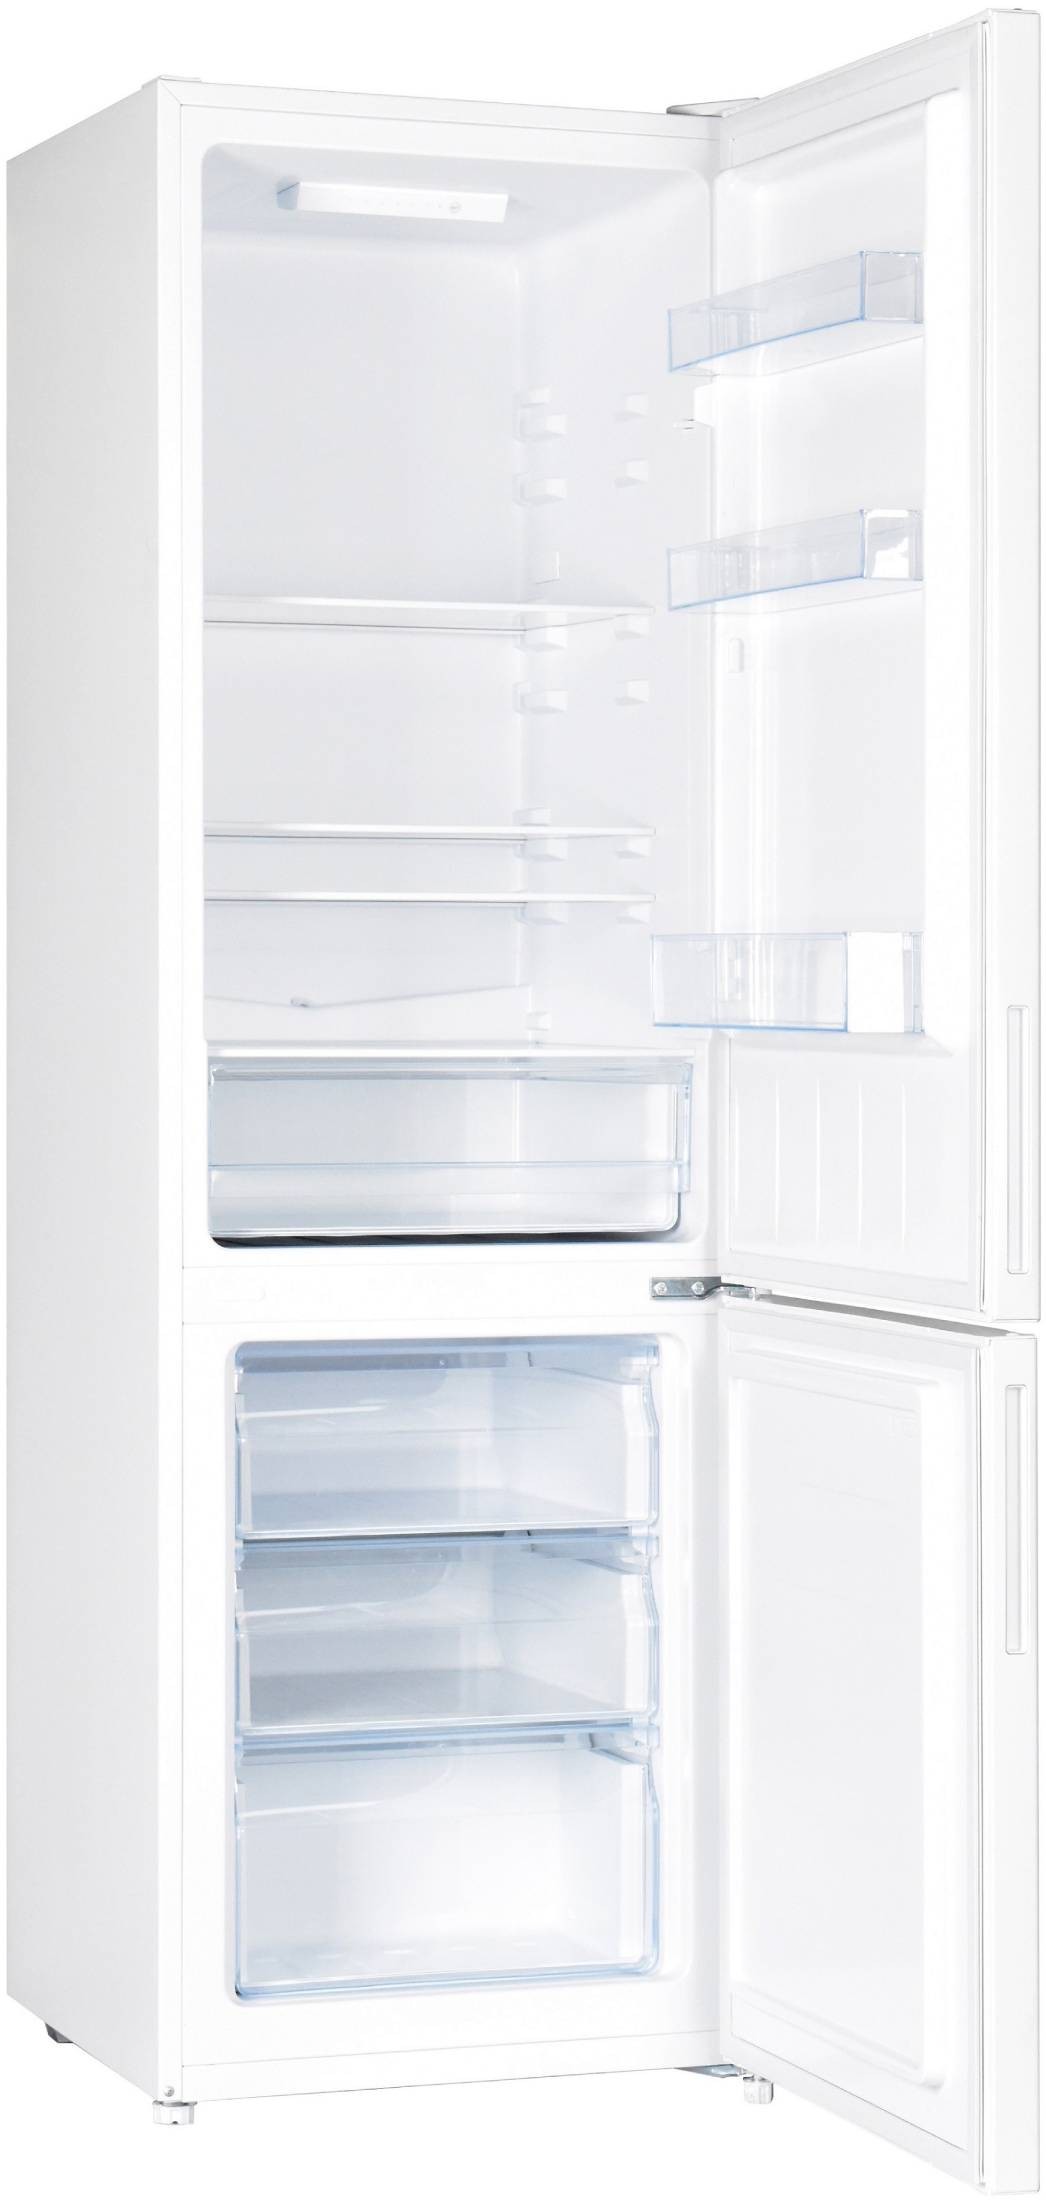 FRIGELUX Réfrigérateur congélateur bas Froid statique Low Frost 157L Blanc - RC168BE